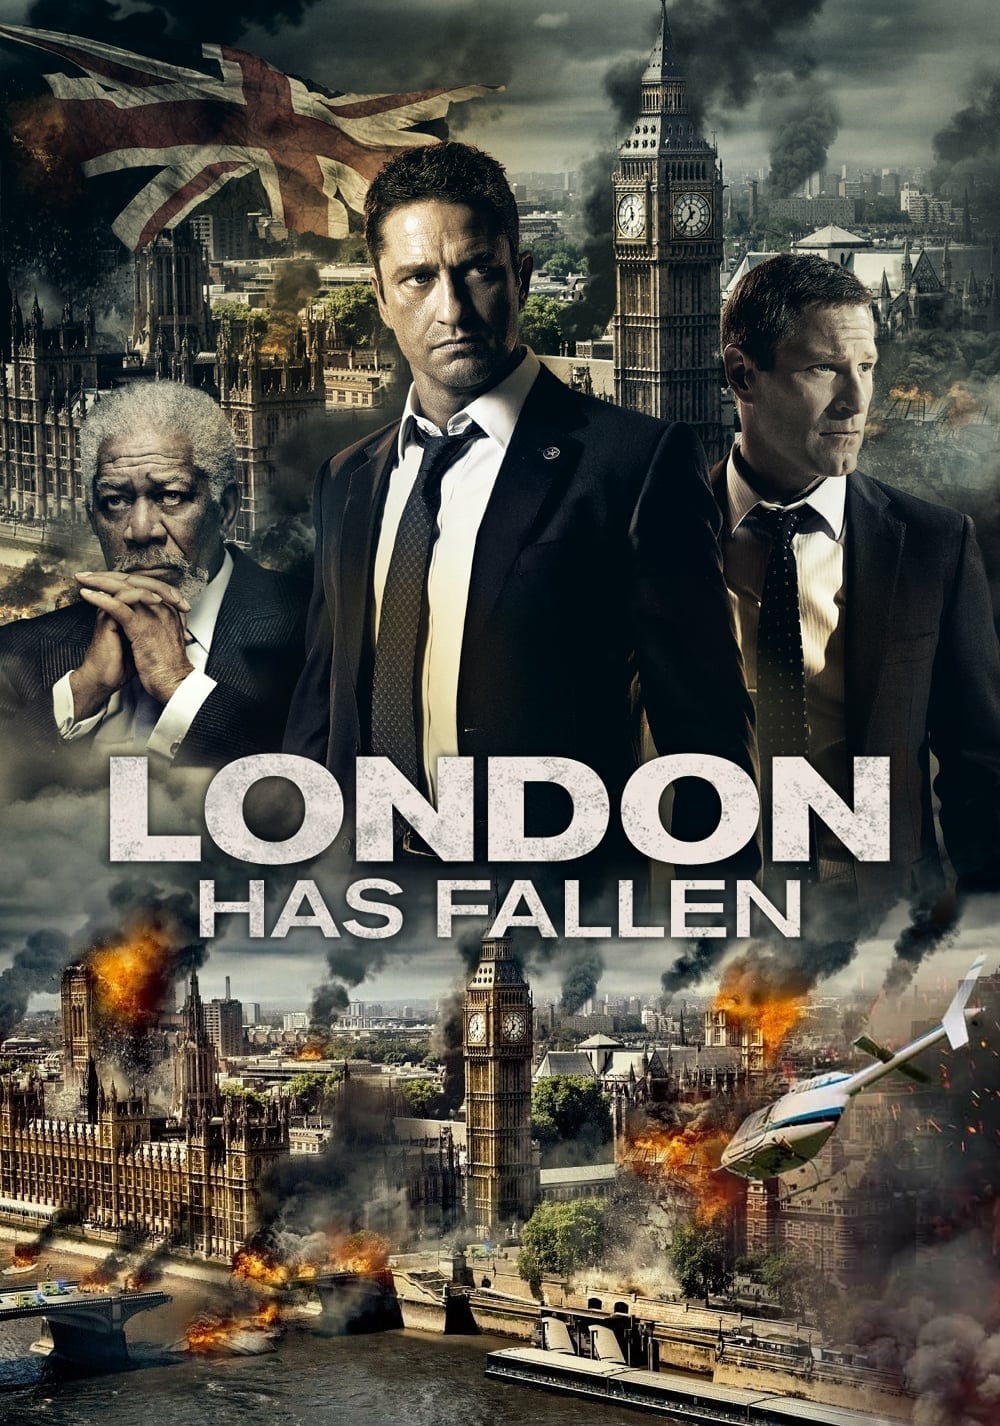 Watch London Has Fallen (2016) Full Movie Online Free - CineFOX